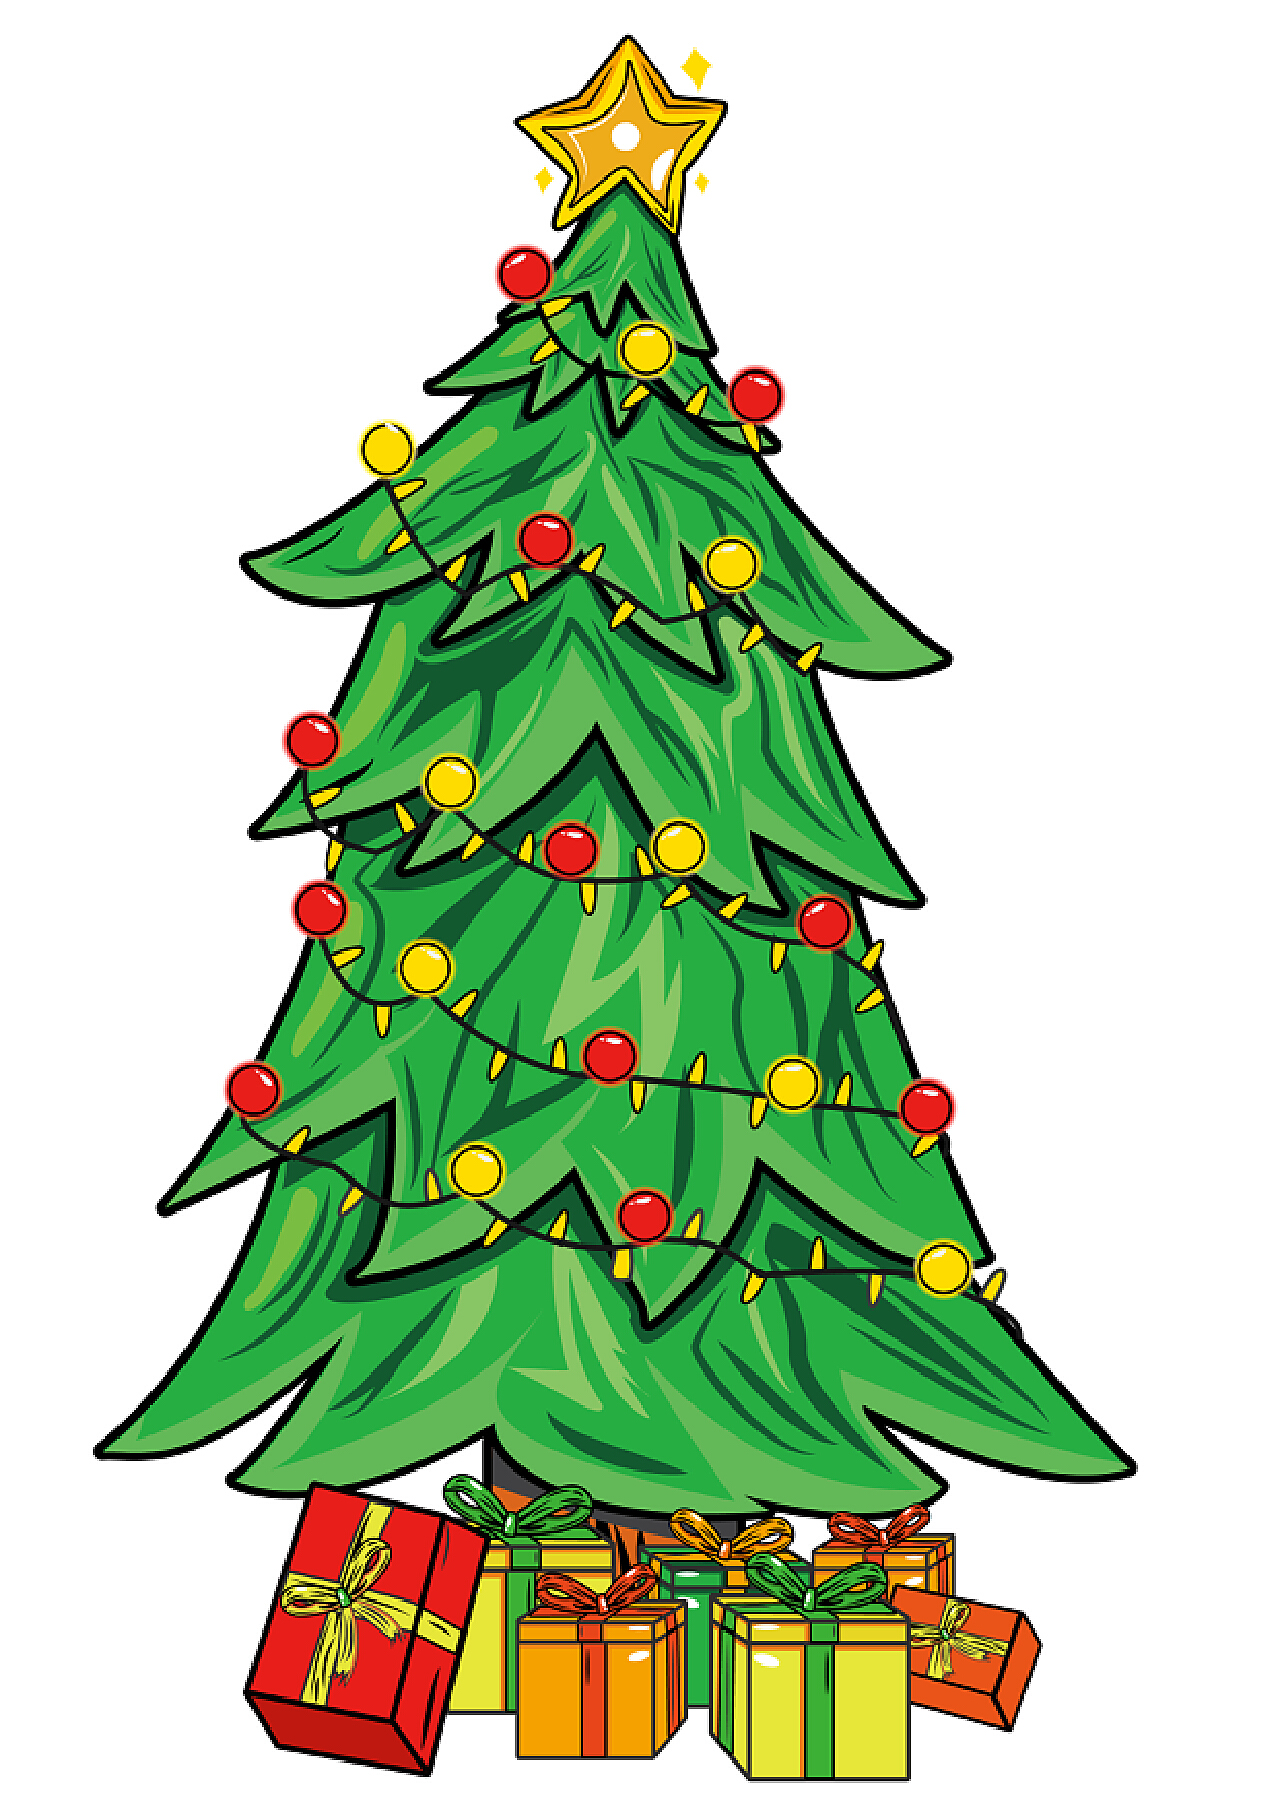 水果圣诞树素材-水果圣诞树模板-水果圣诞树图片免费下载-设图网